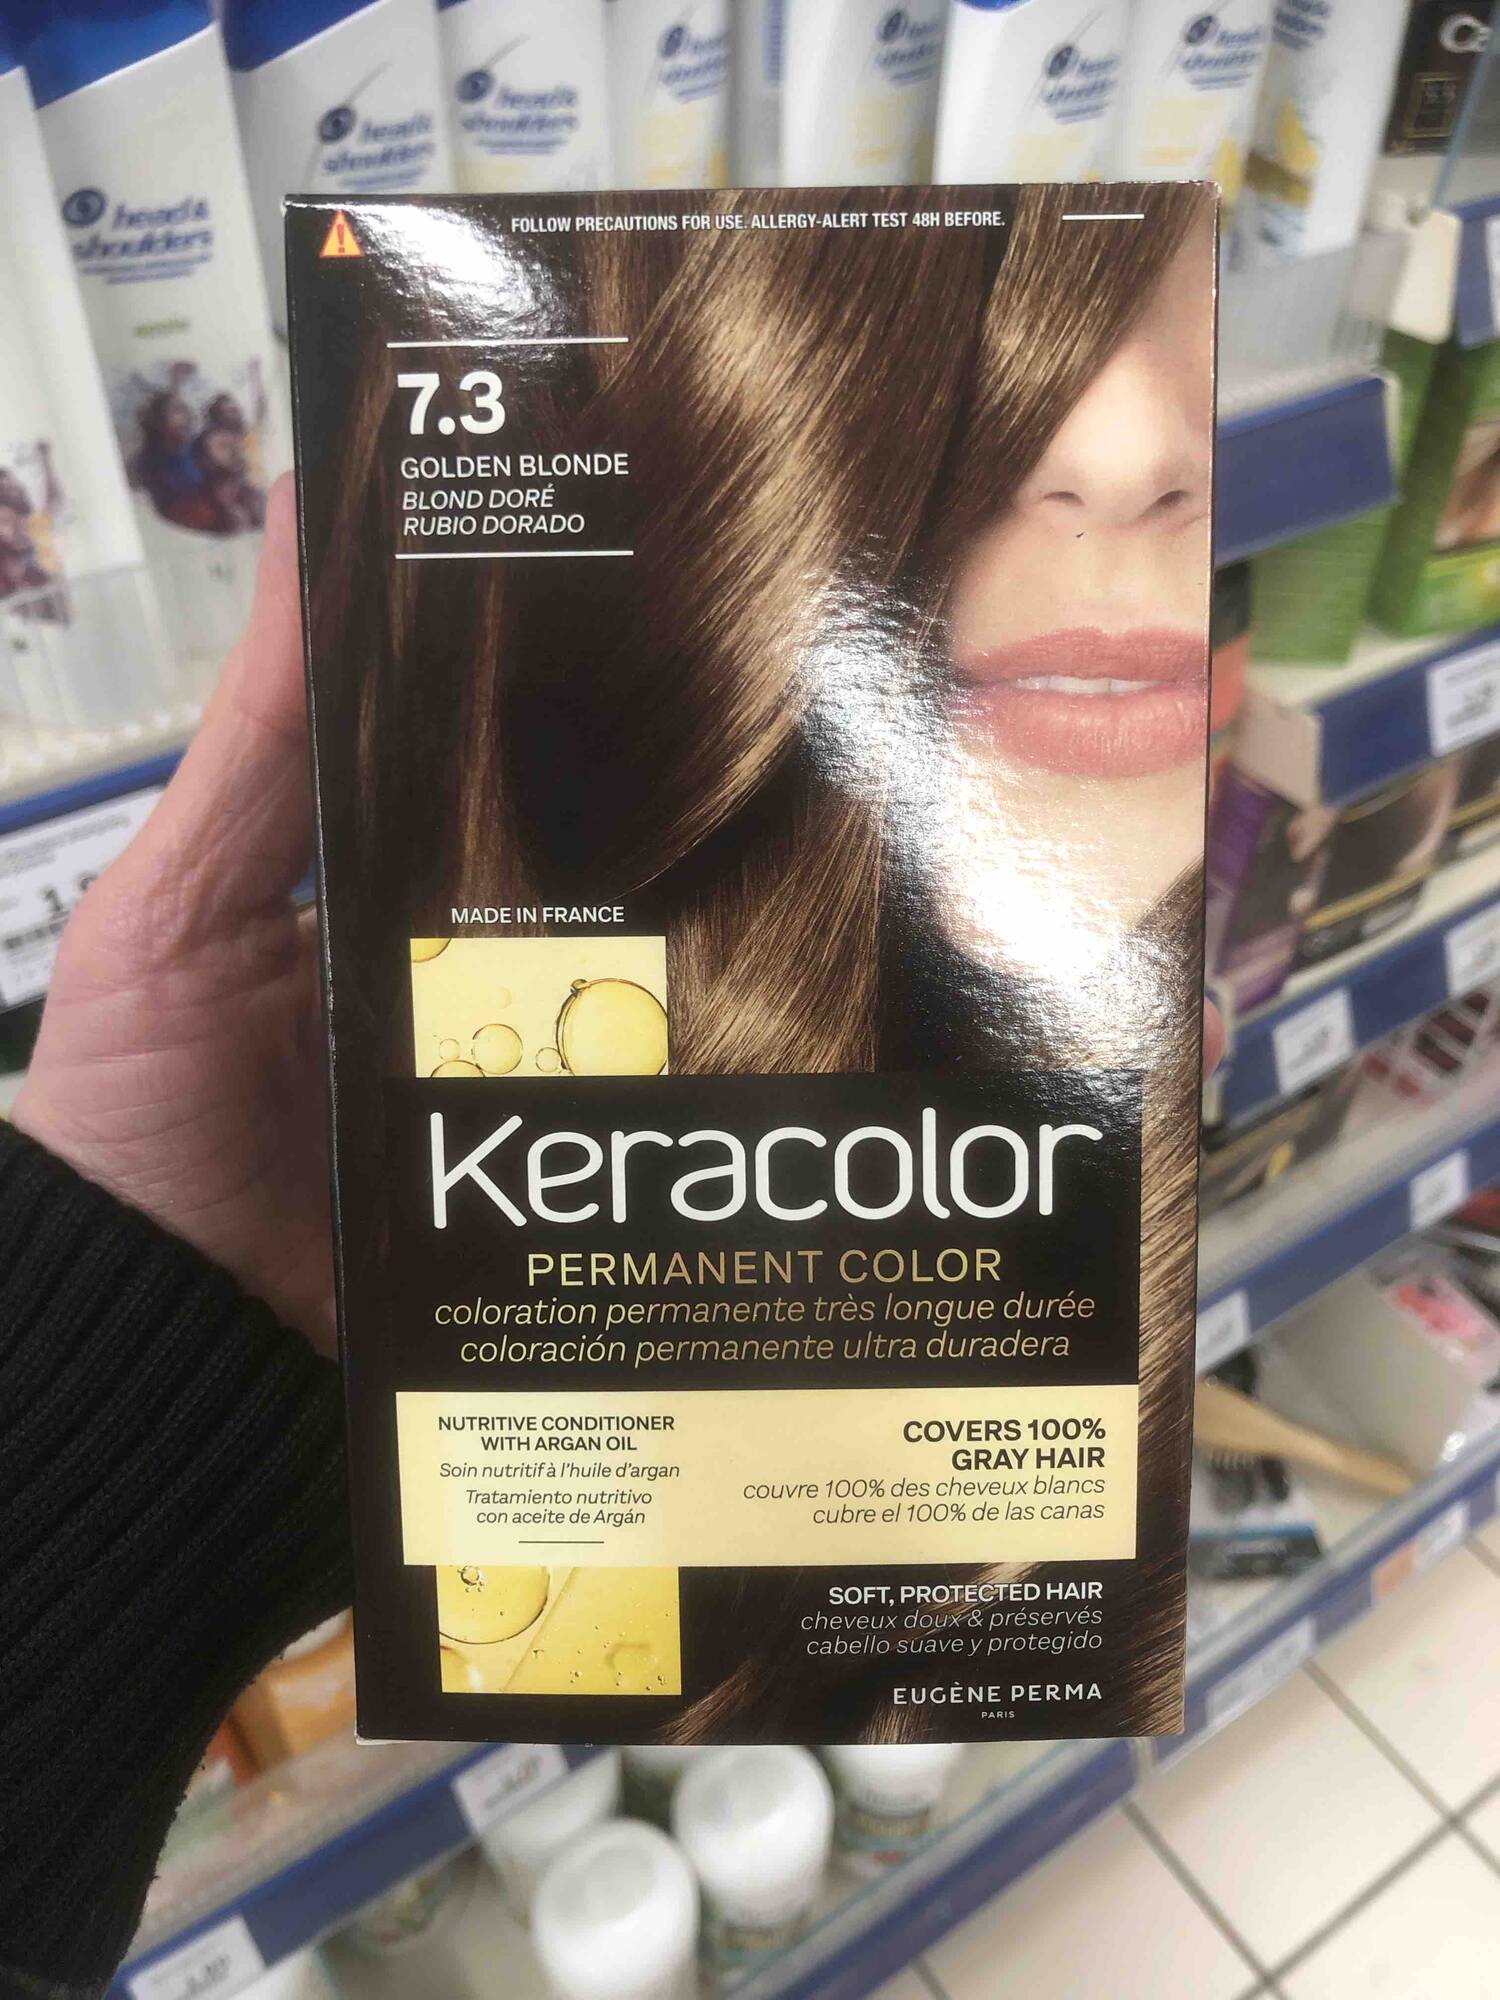 EUGÈNE PERMA - Keracolor - Coloration permanente 7.3 blond doré